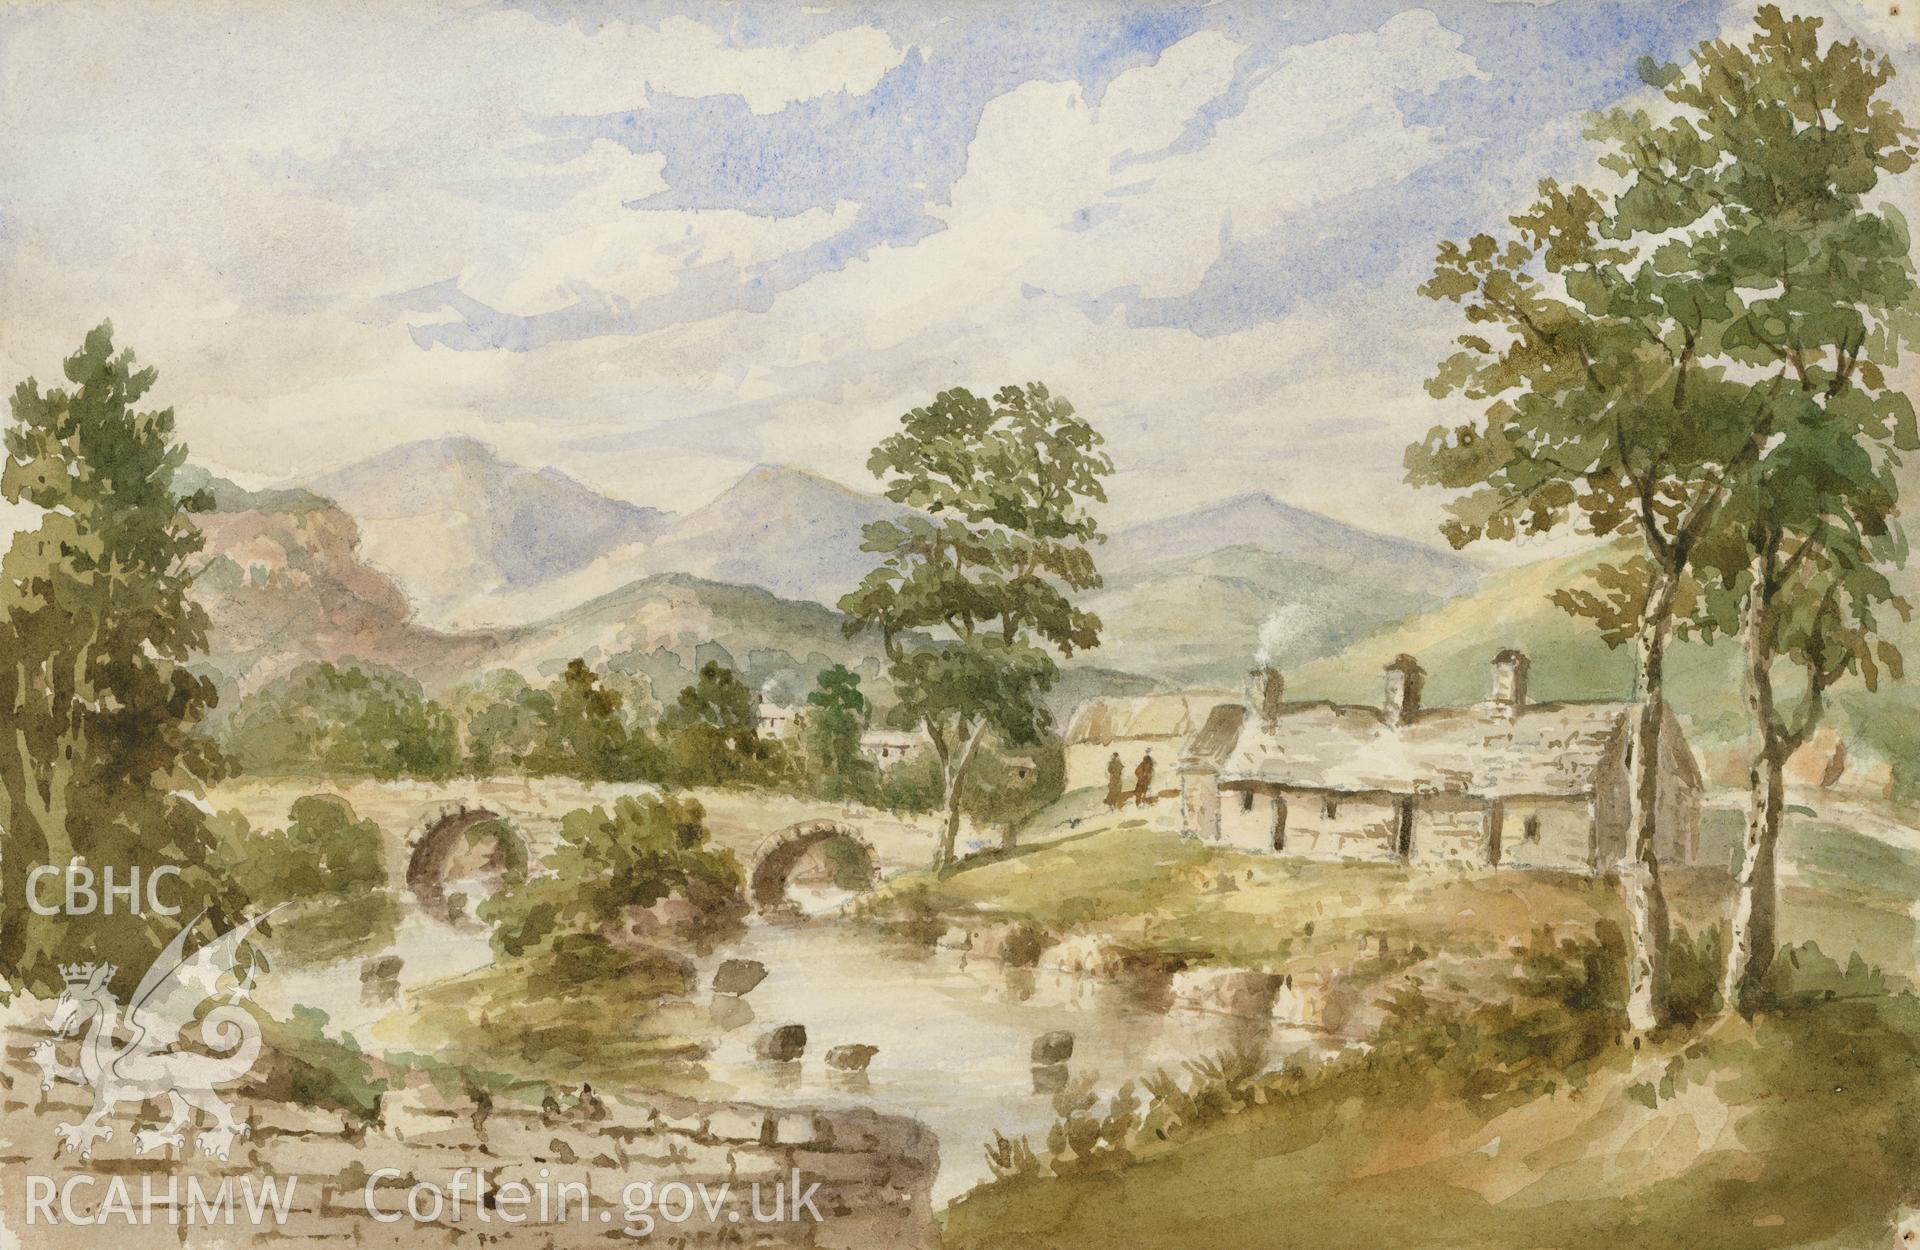 Digital copy of a watercolour showing Pont Rhiwaedog the hamlet of Rhos y Gwaliau painted by Mary Ann Malkin, 1846.